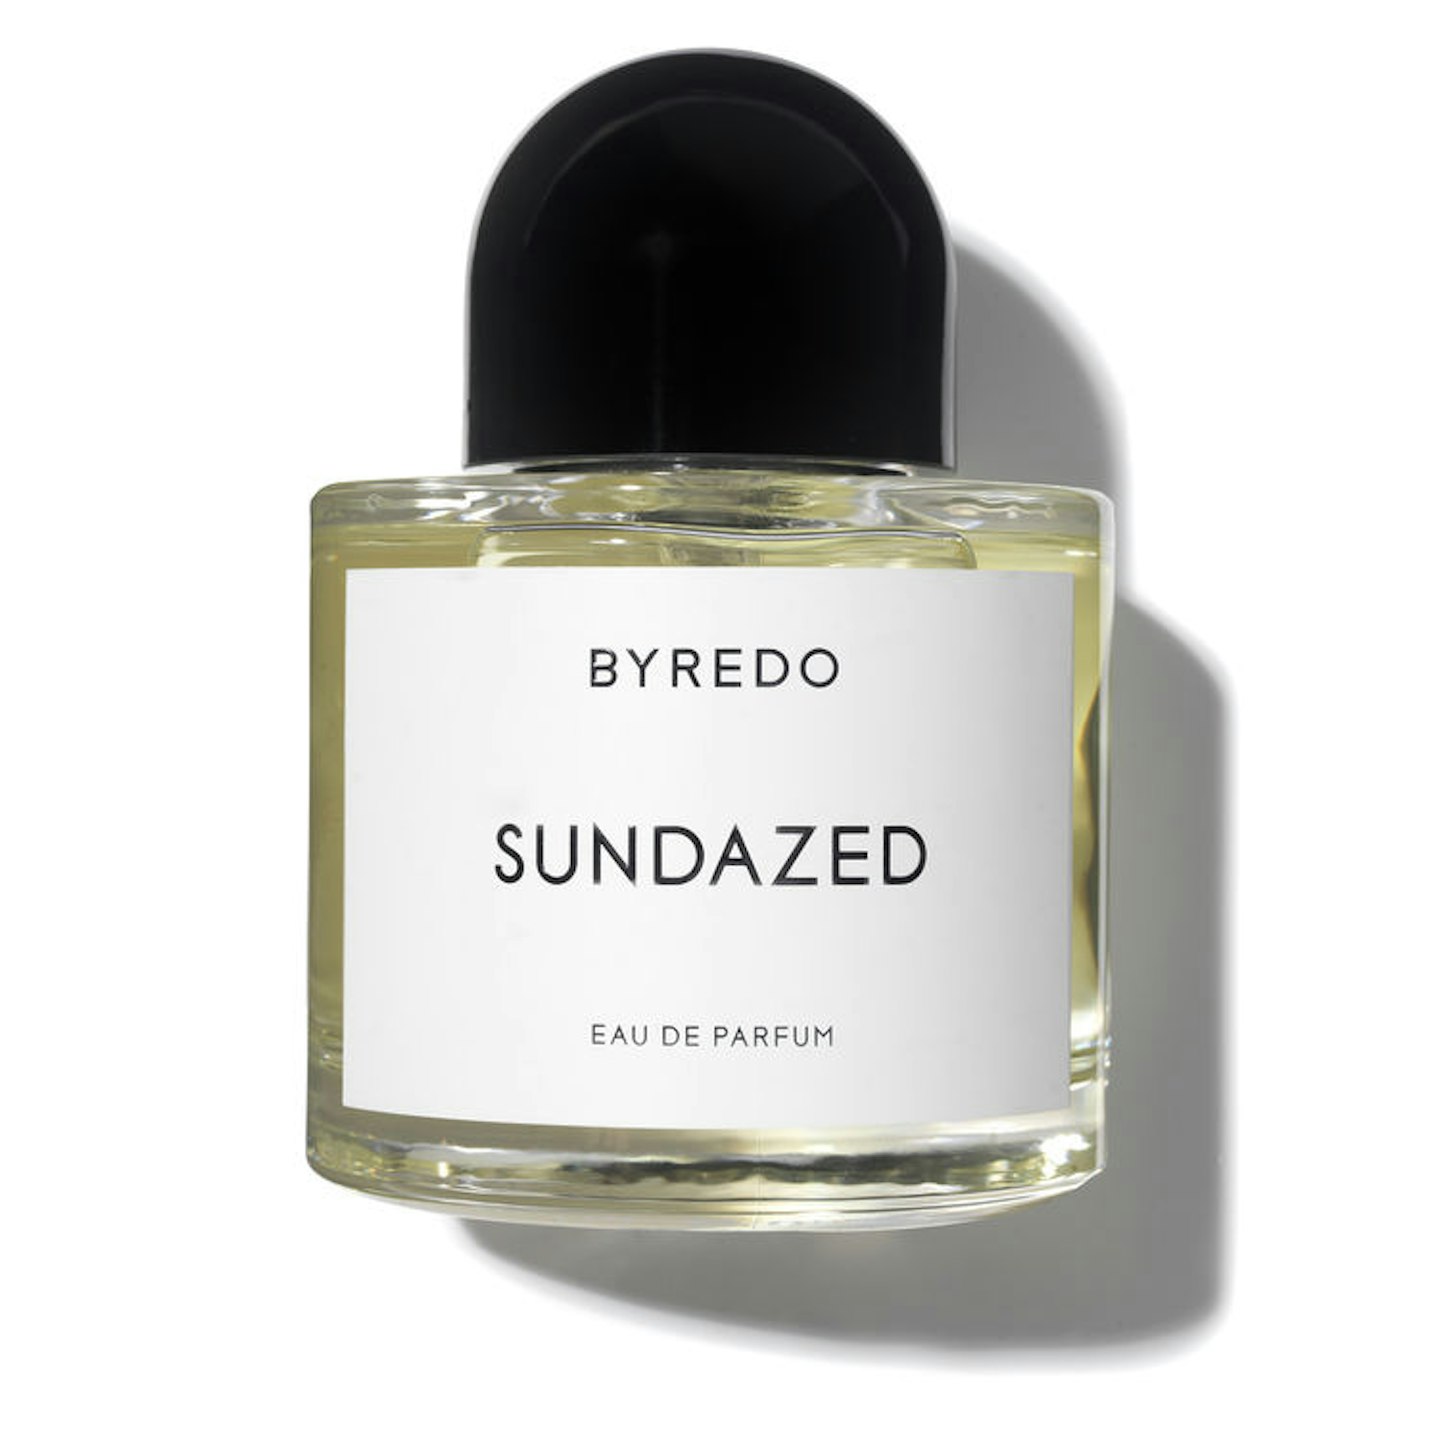 Byredo SunDazed, £165 for 100ml